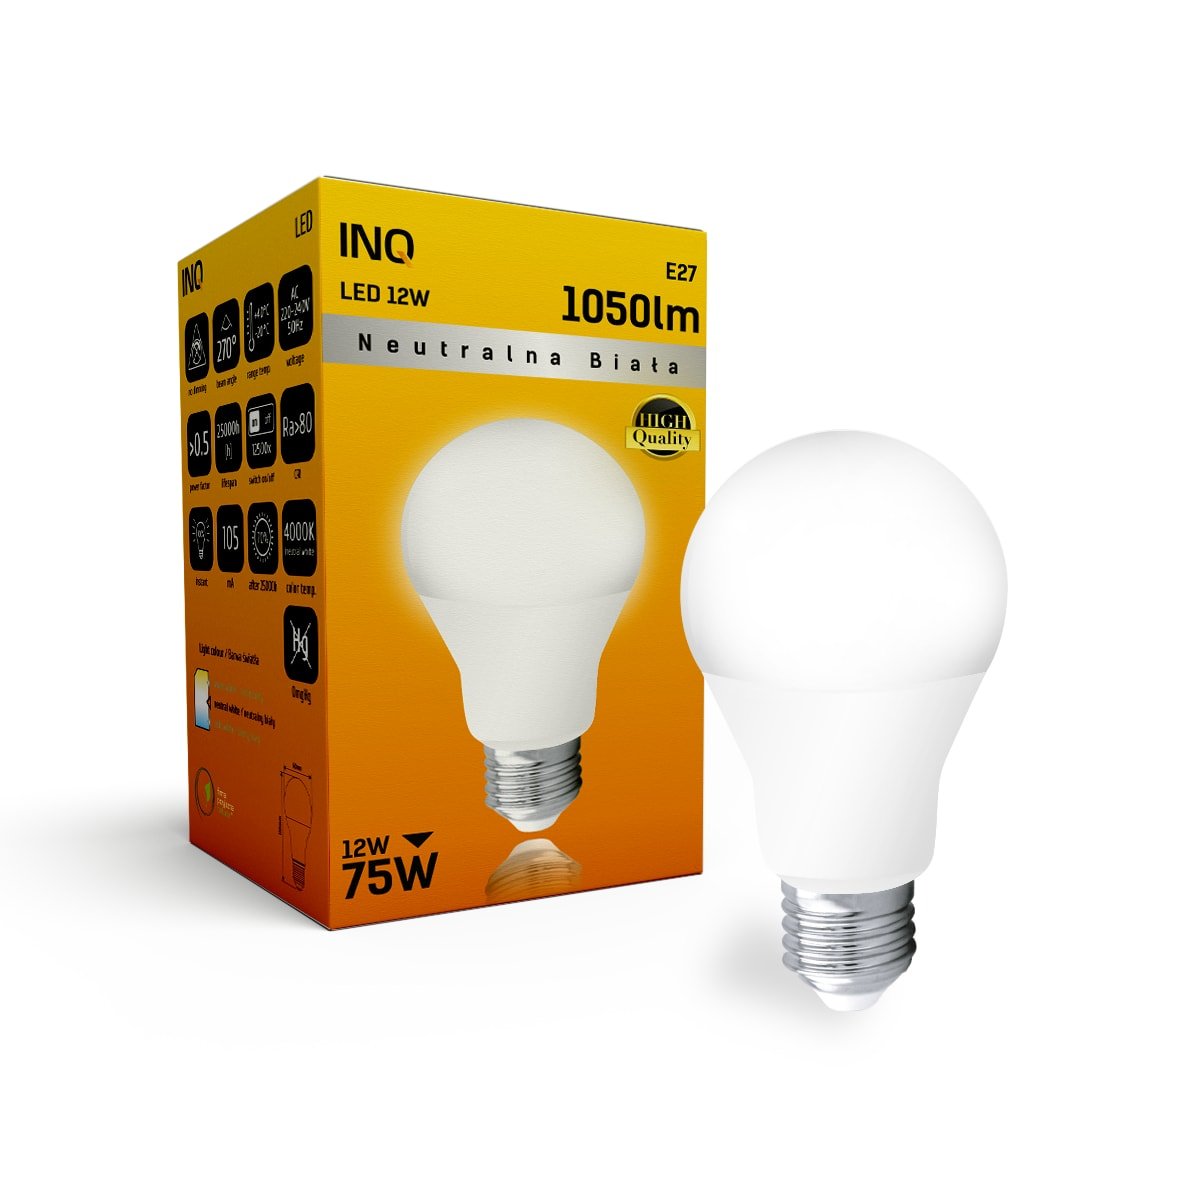 Фото - Лампочка Żarówka LED INQ LA044NW, E27, 12 W, biała neutralna